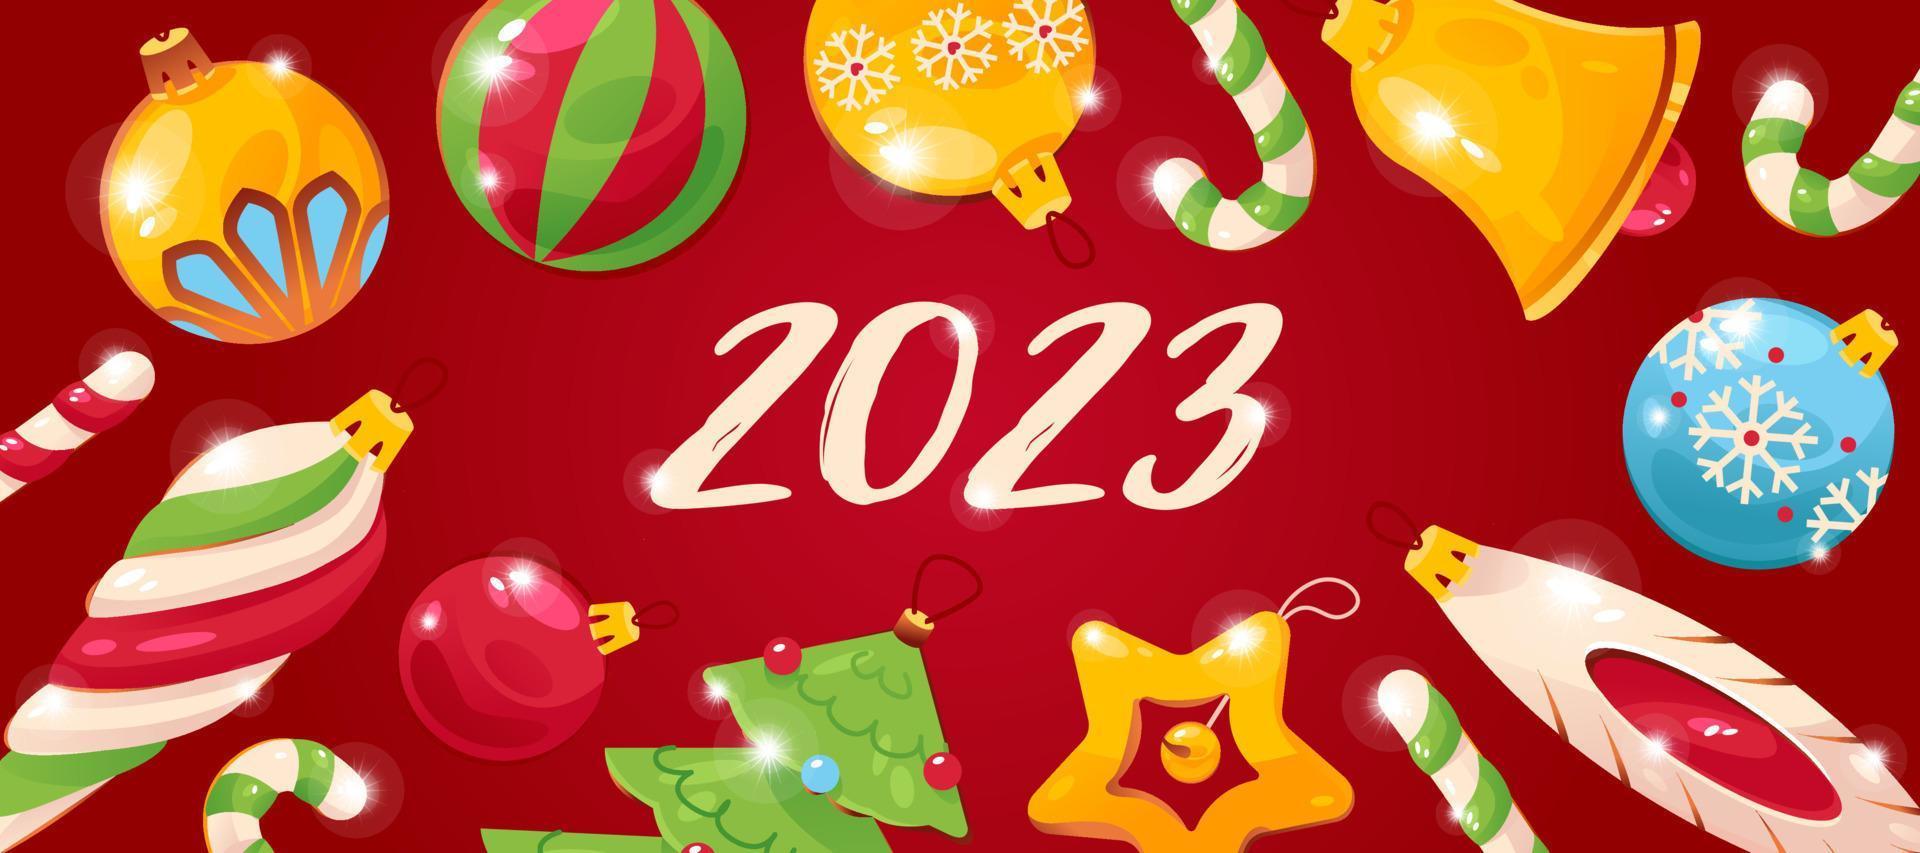 Rafflesia Arnoldi soporte petróleo crudo feliz año nuevo 2023, postal, pancarta con adornos navideños. ilustración  vectorial 14602210 Vector en Vecteezy